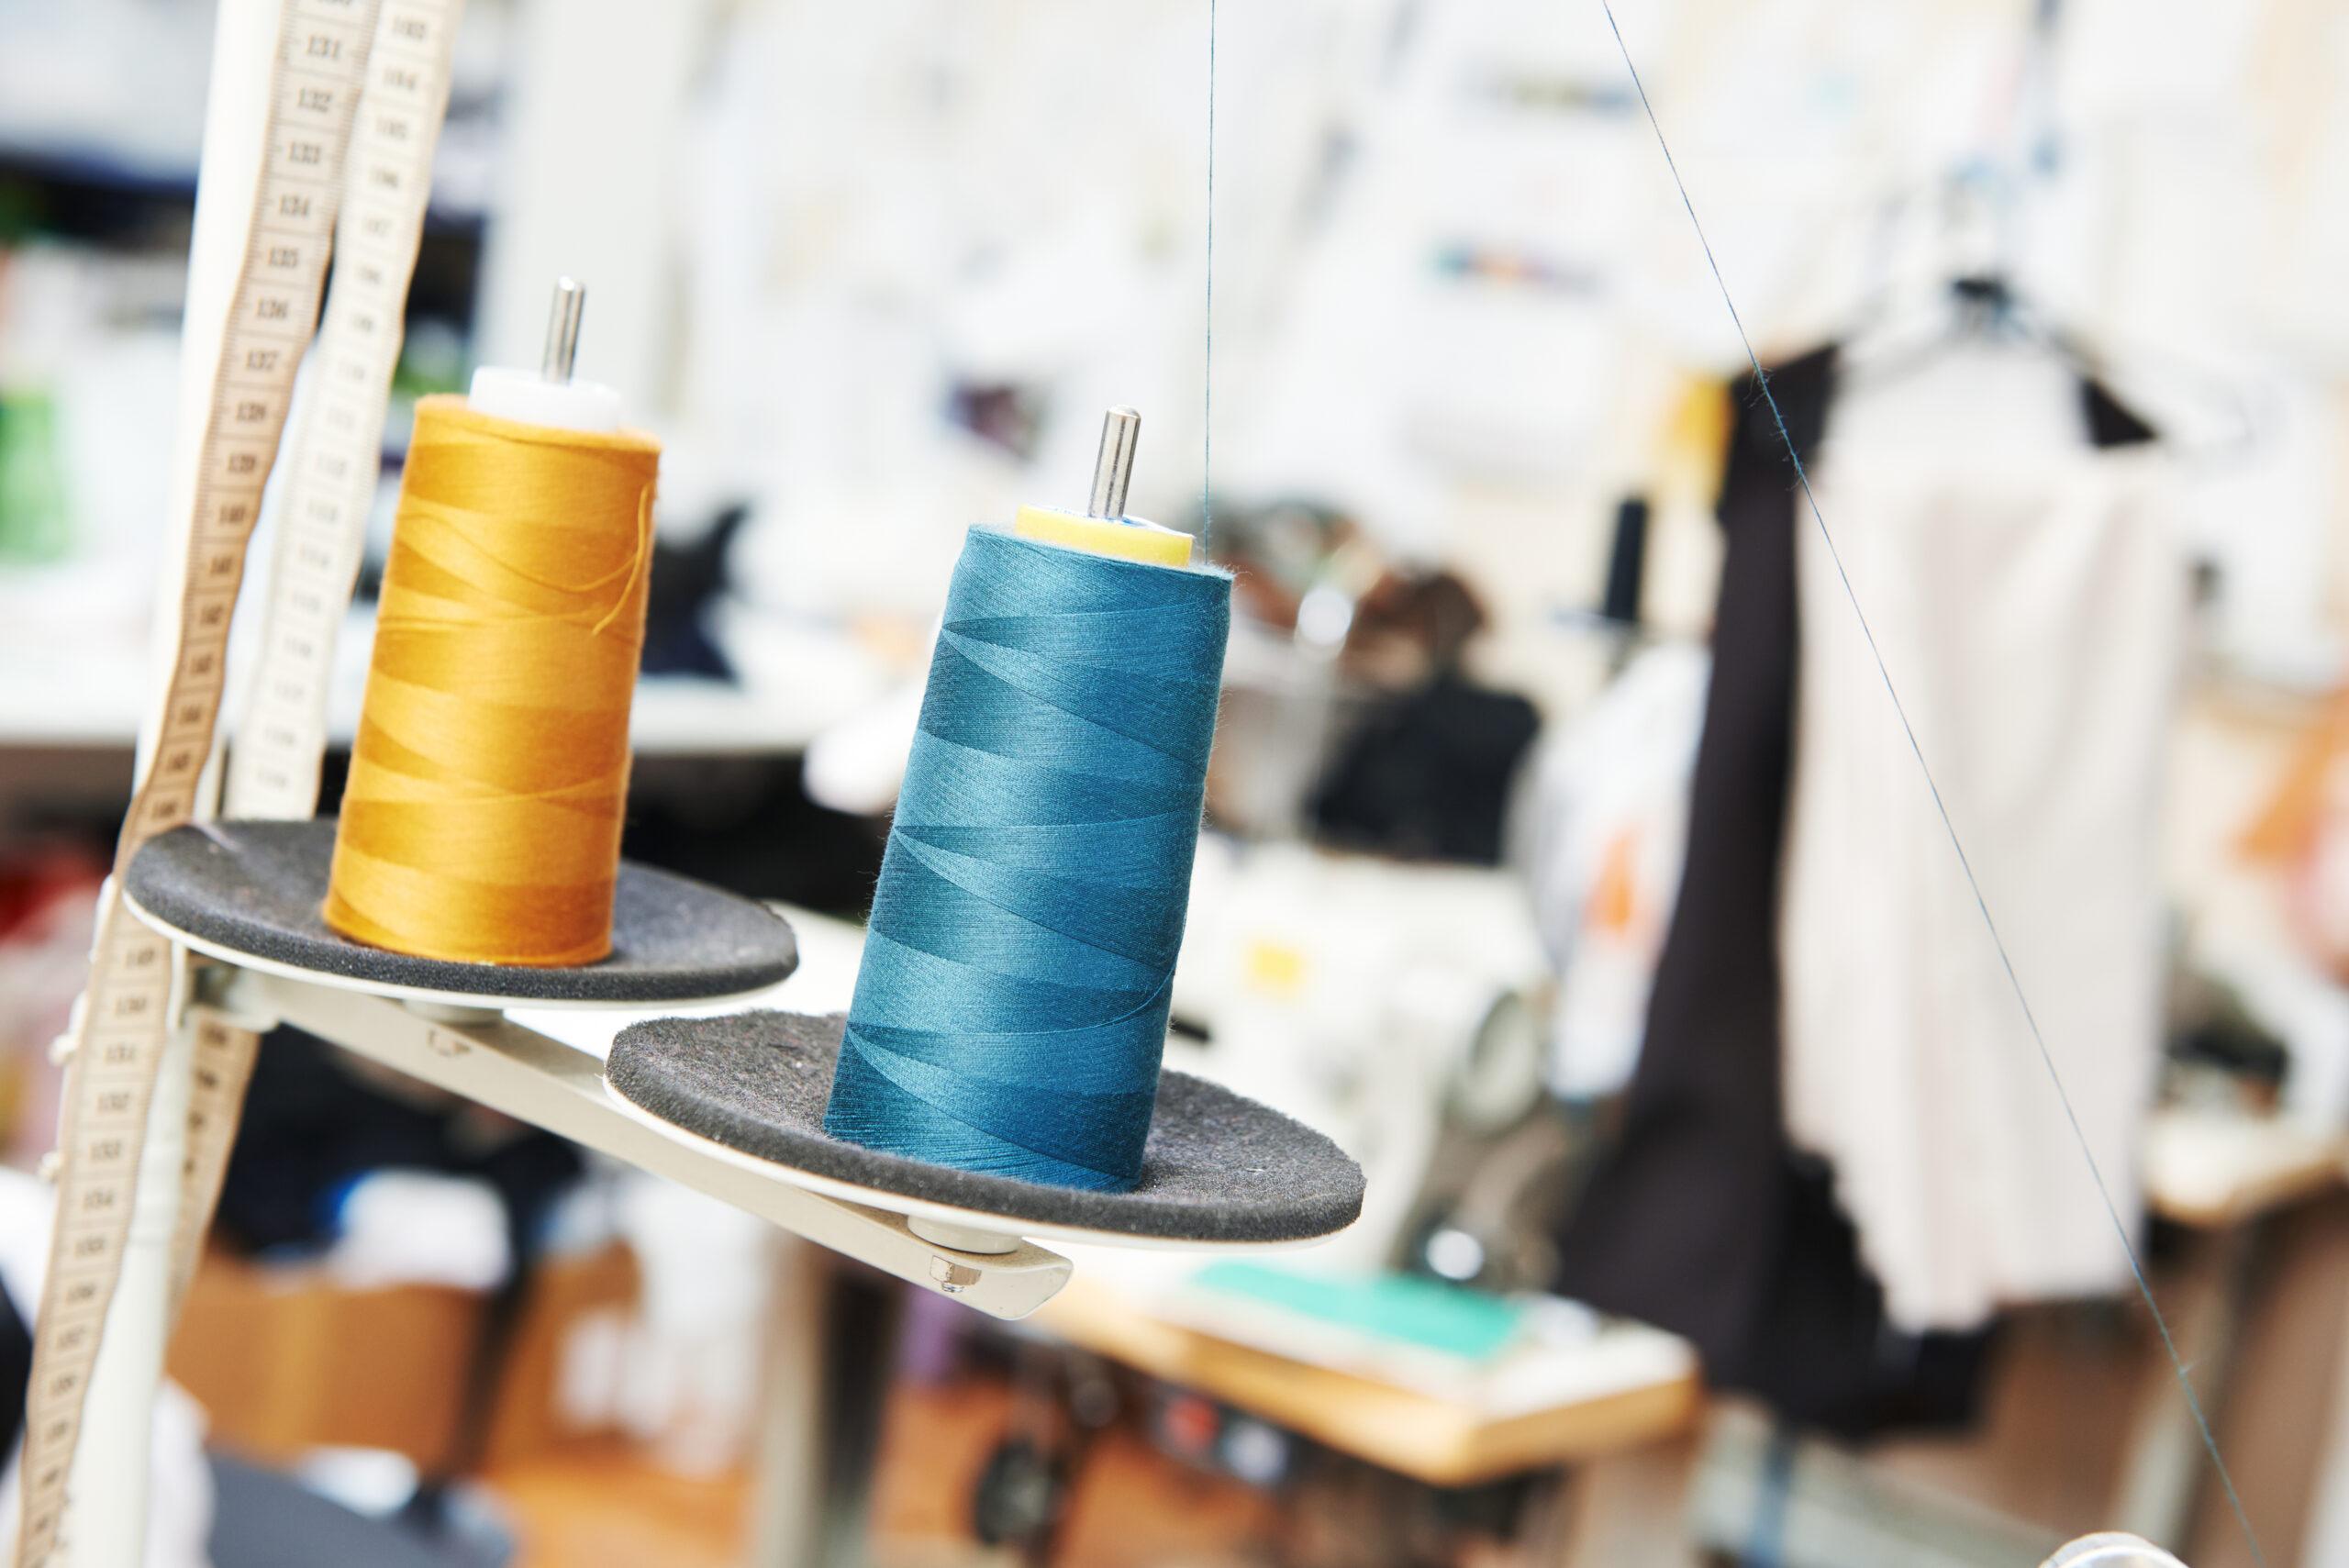 Ивановские производители тканей и одежды стали лидерами онлайн-торговли